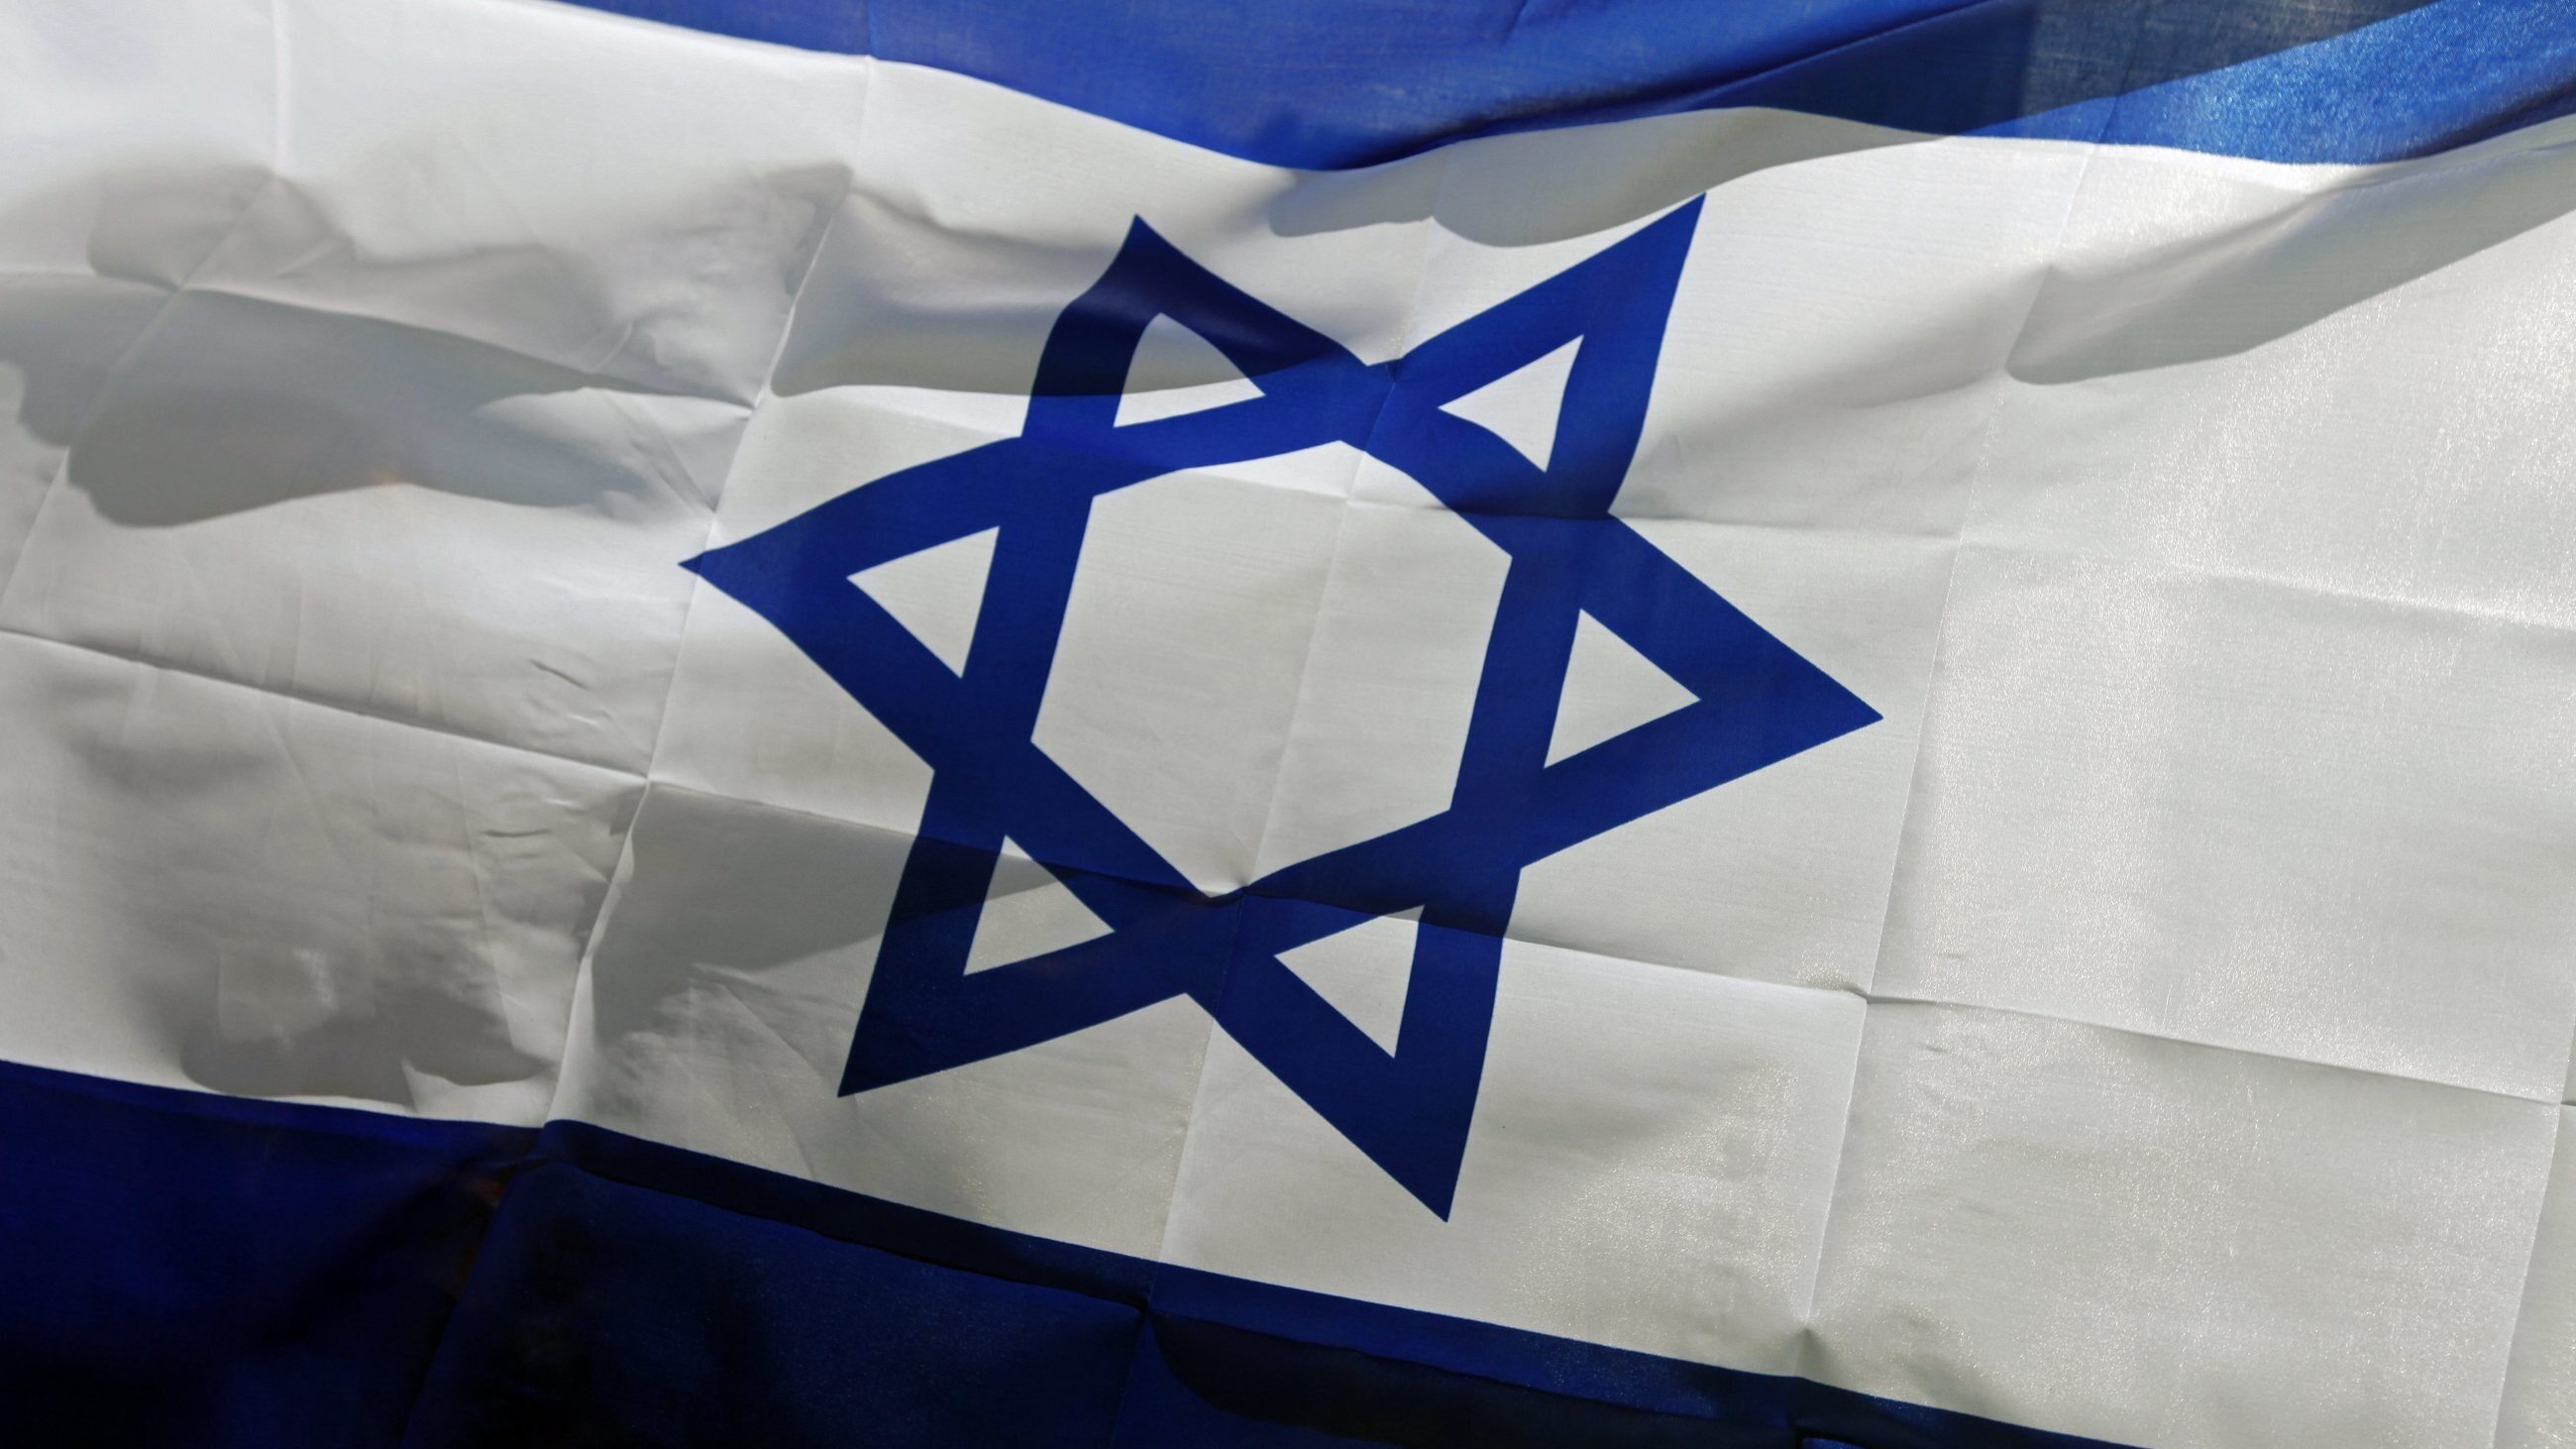 Który z poniższych krajów utrzymuje relacje dyplomatyczne z Izraelem?